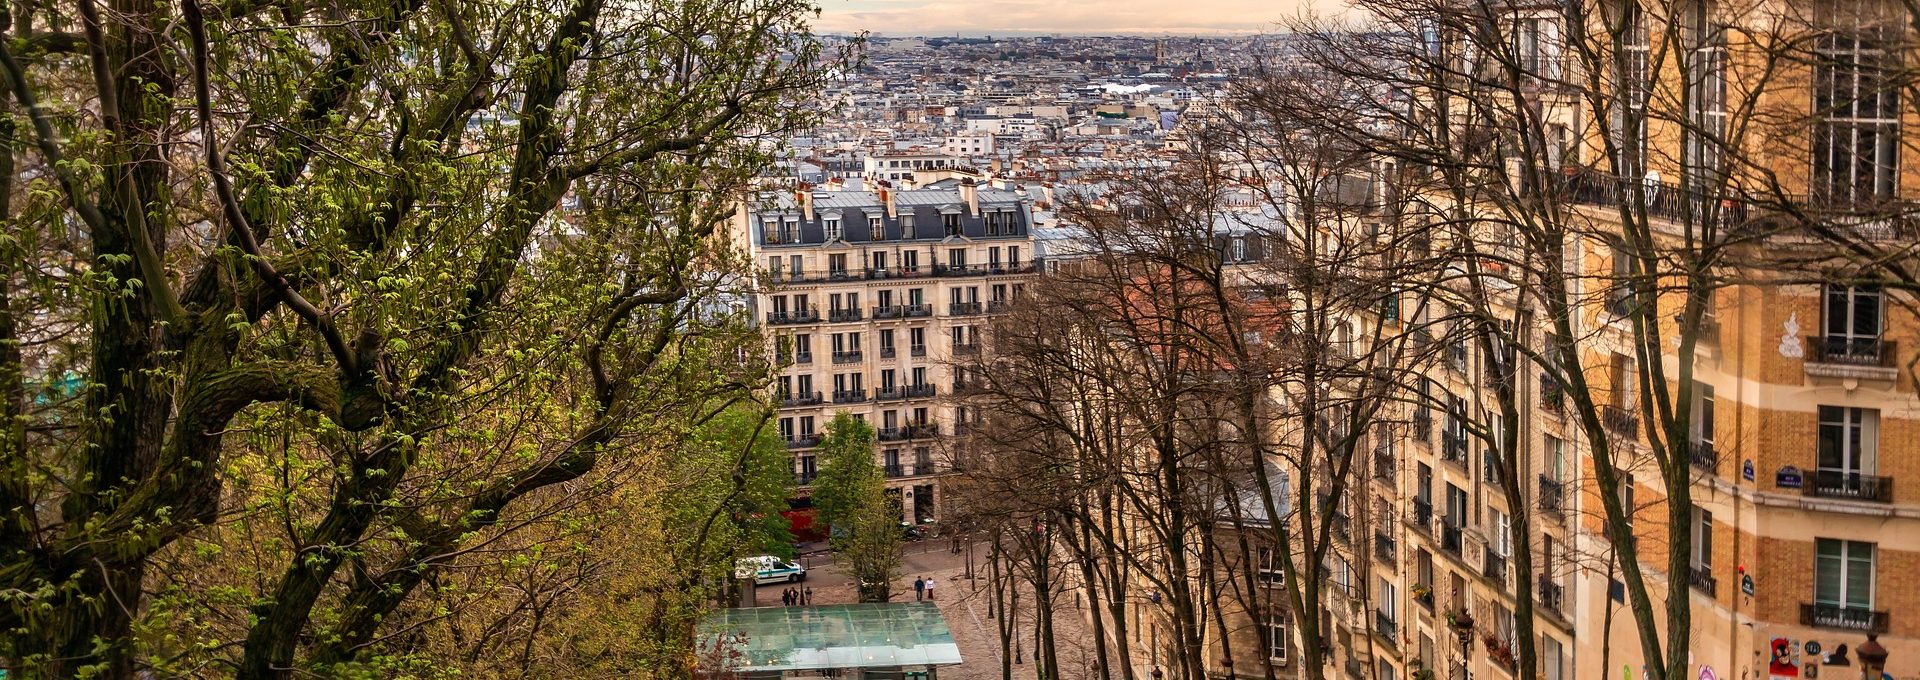 Vista do bairro Montmartre em Paris